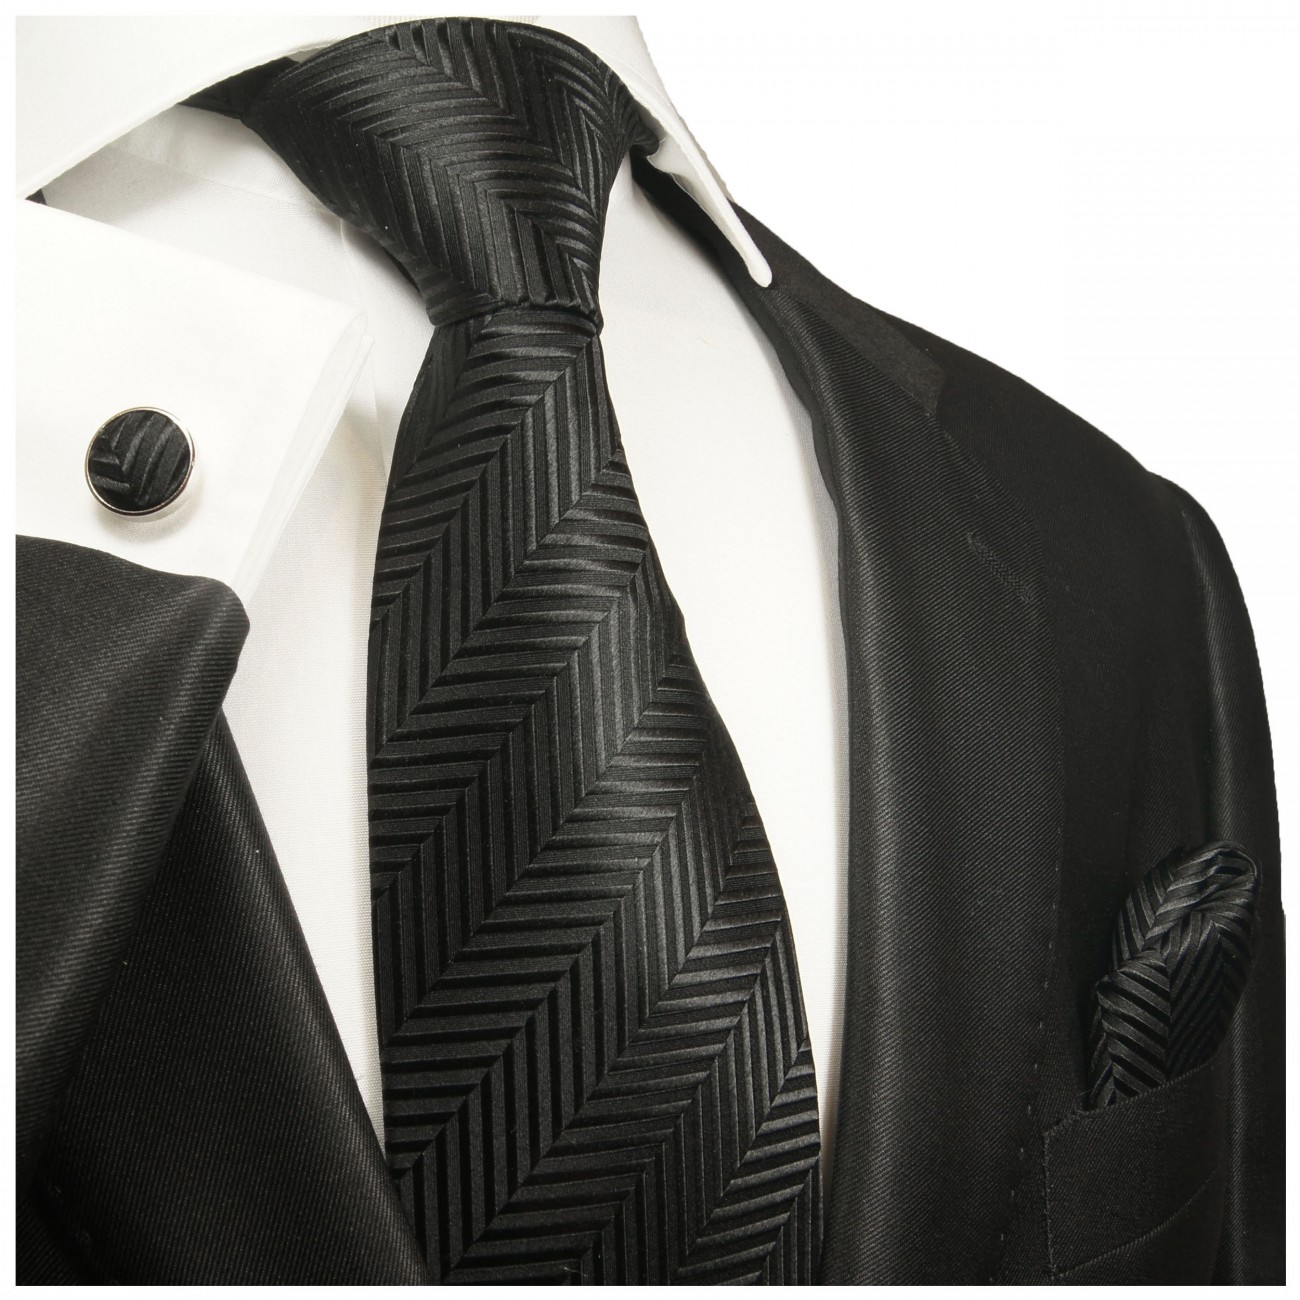 Krawatte schwarz Trauerkrawatte uni Seide mit Einstecktuch und Manschettenknöpfe